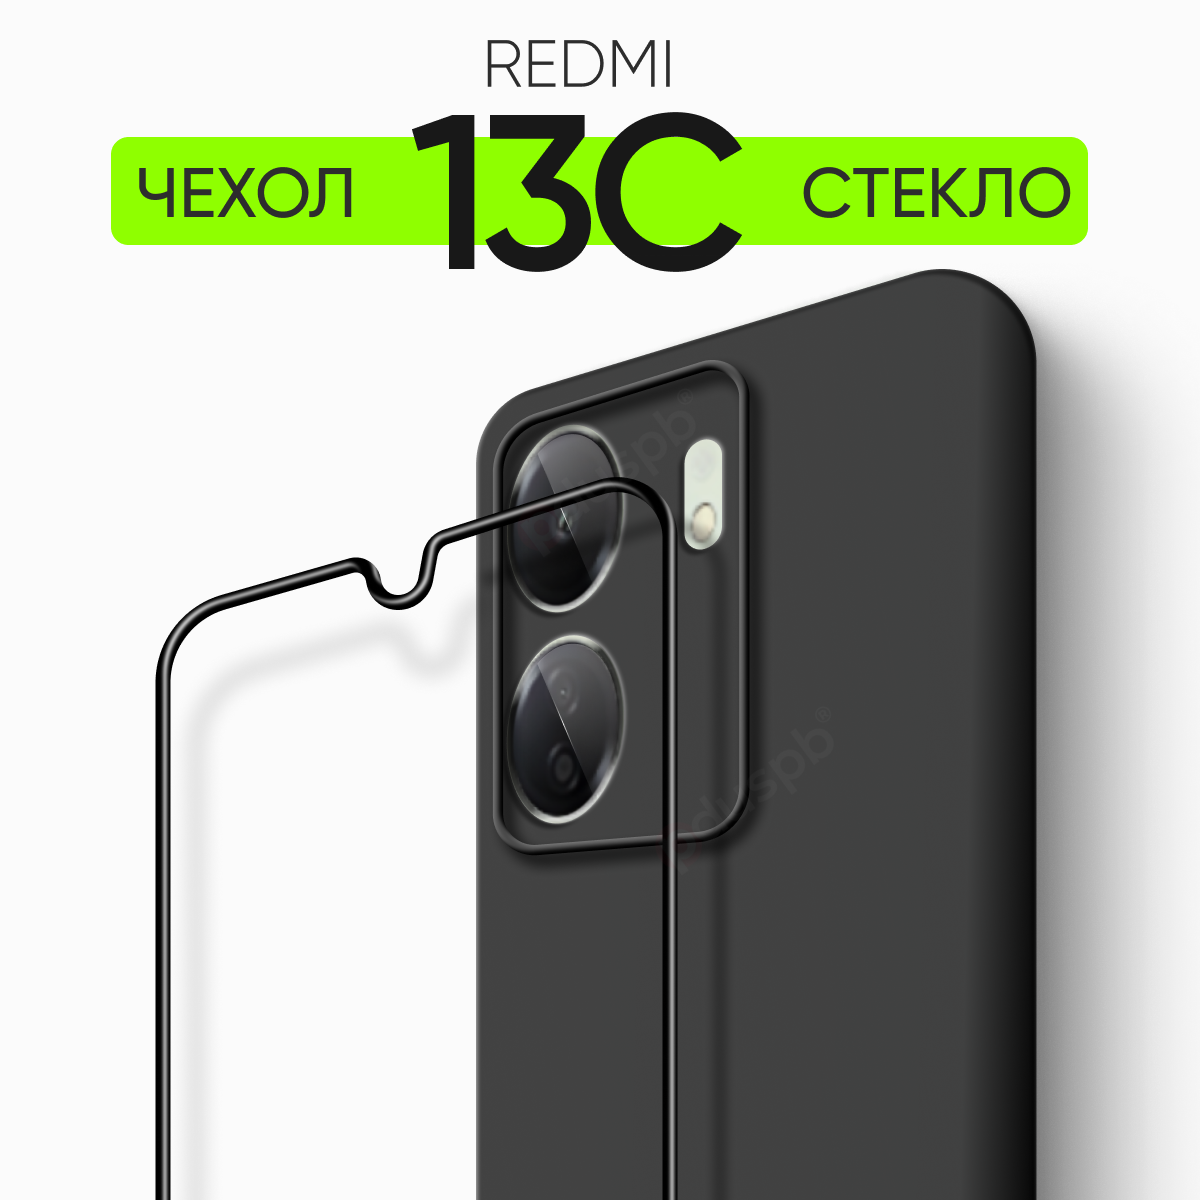 Комплект 2 в 1: Чехол № 80 + стекло Redmi 13C / противоударный защитный силиконовый клип-кейс чехол на Редми 13С 13C Xiaomi Ксиоми Сяоми